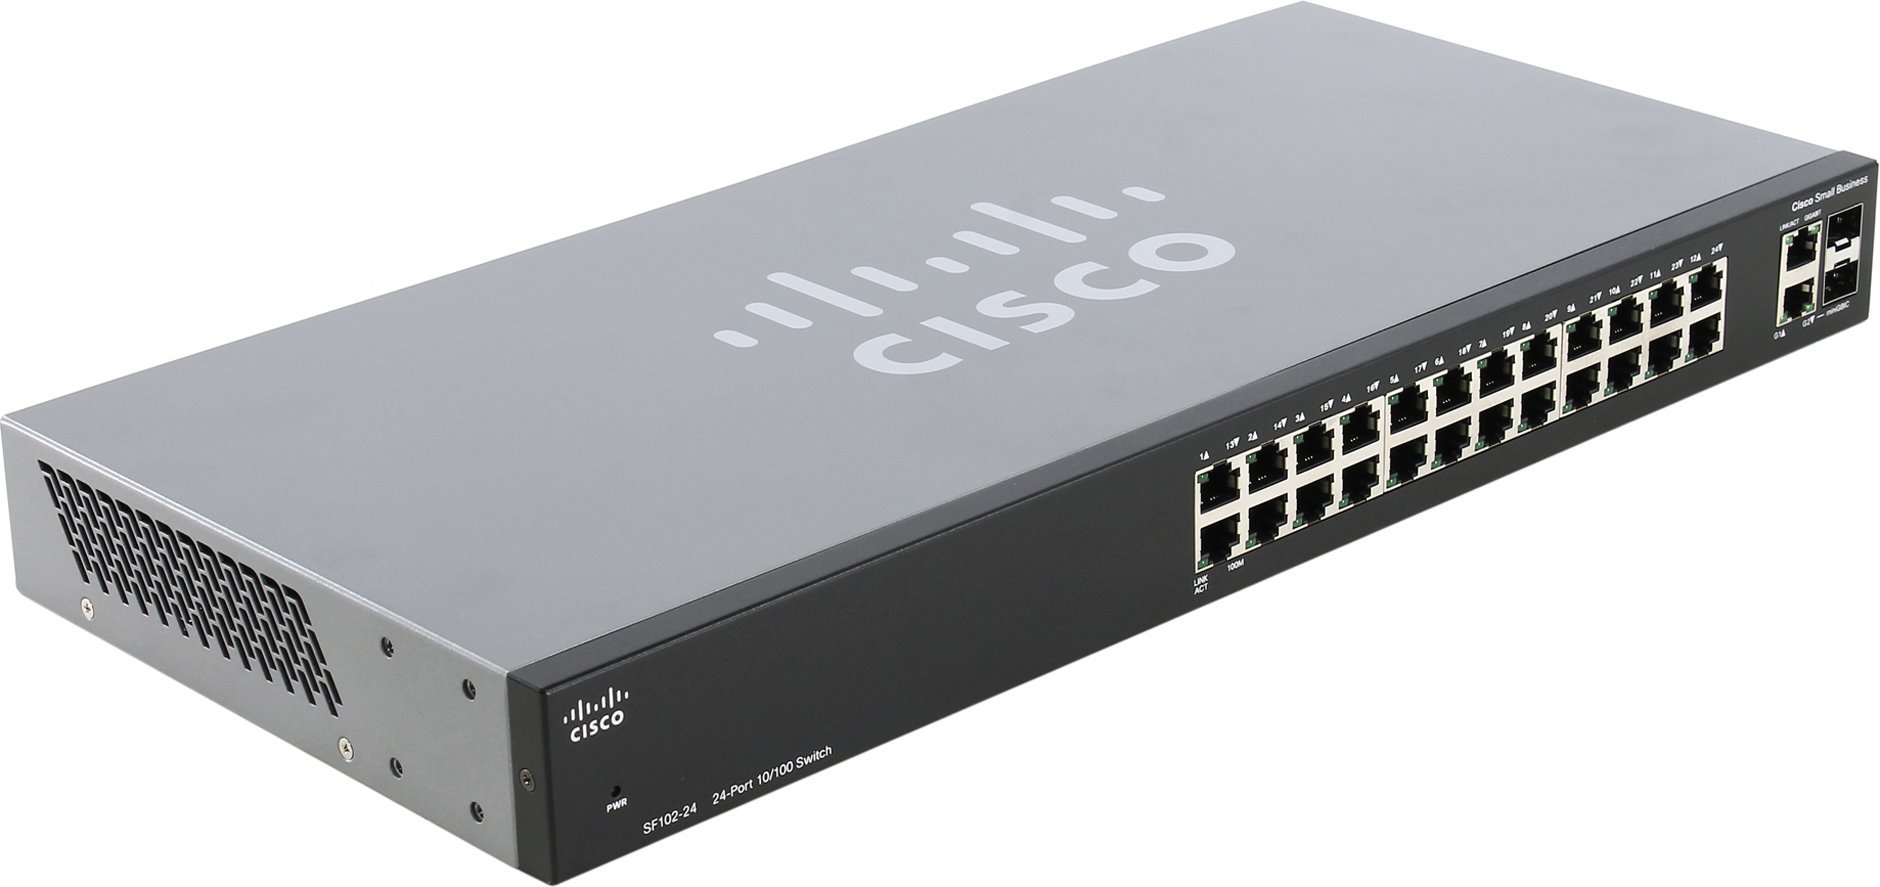 Was neues bekannt geworden über den Angriff auf 200 000 Netzwerk-Switches Cisco?